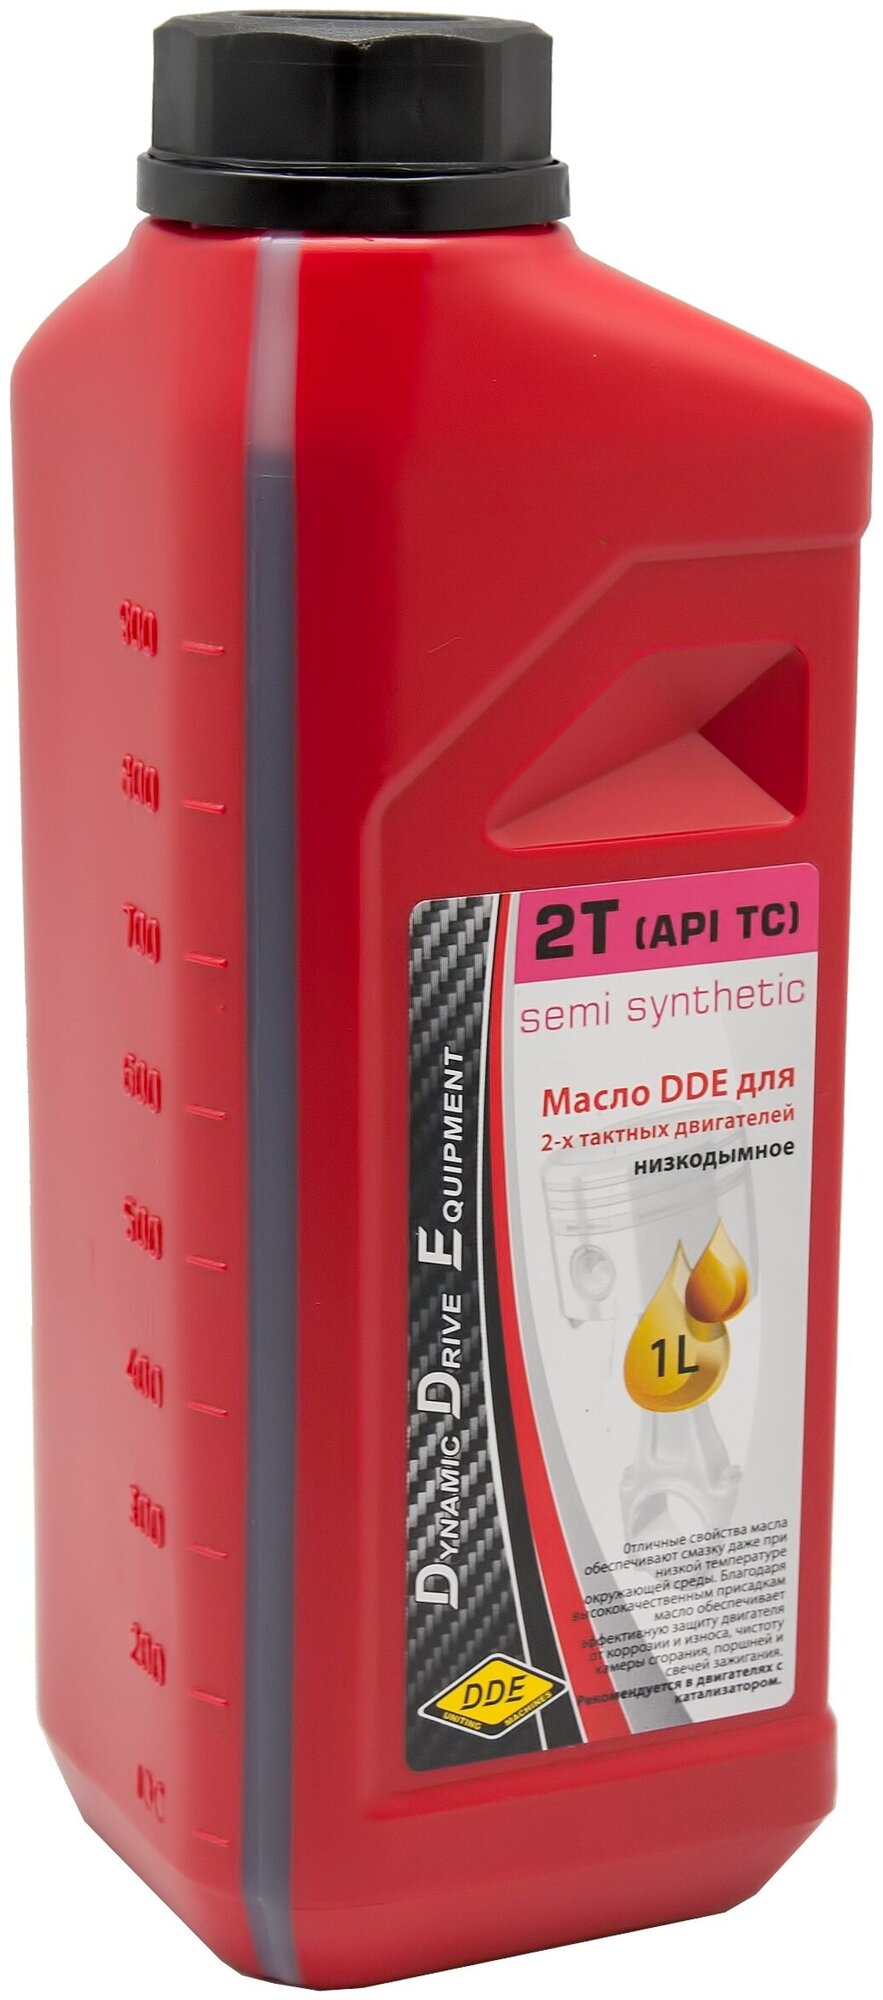 Полусинтетическое моторное масло DDE 2T (API TС), 1 л